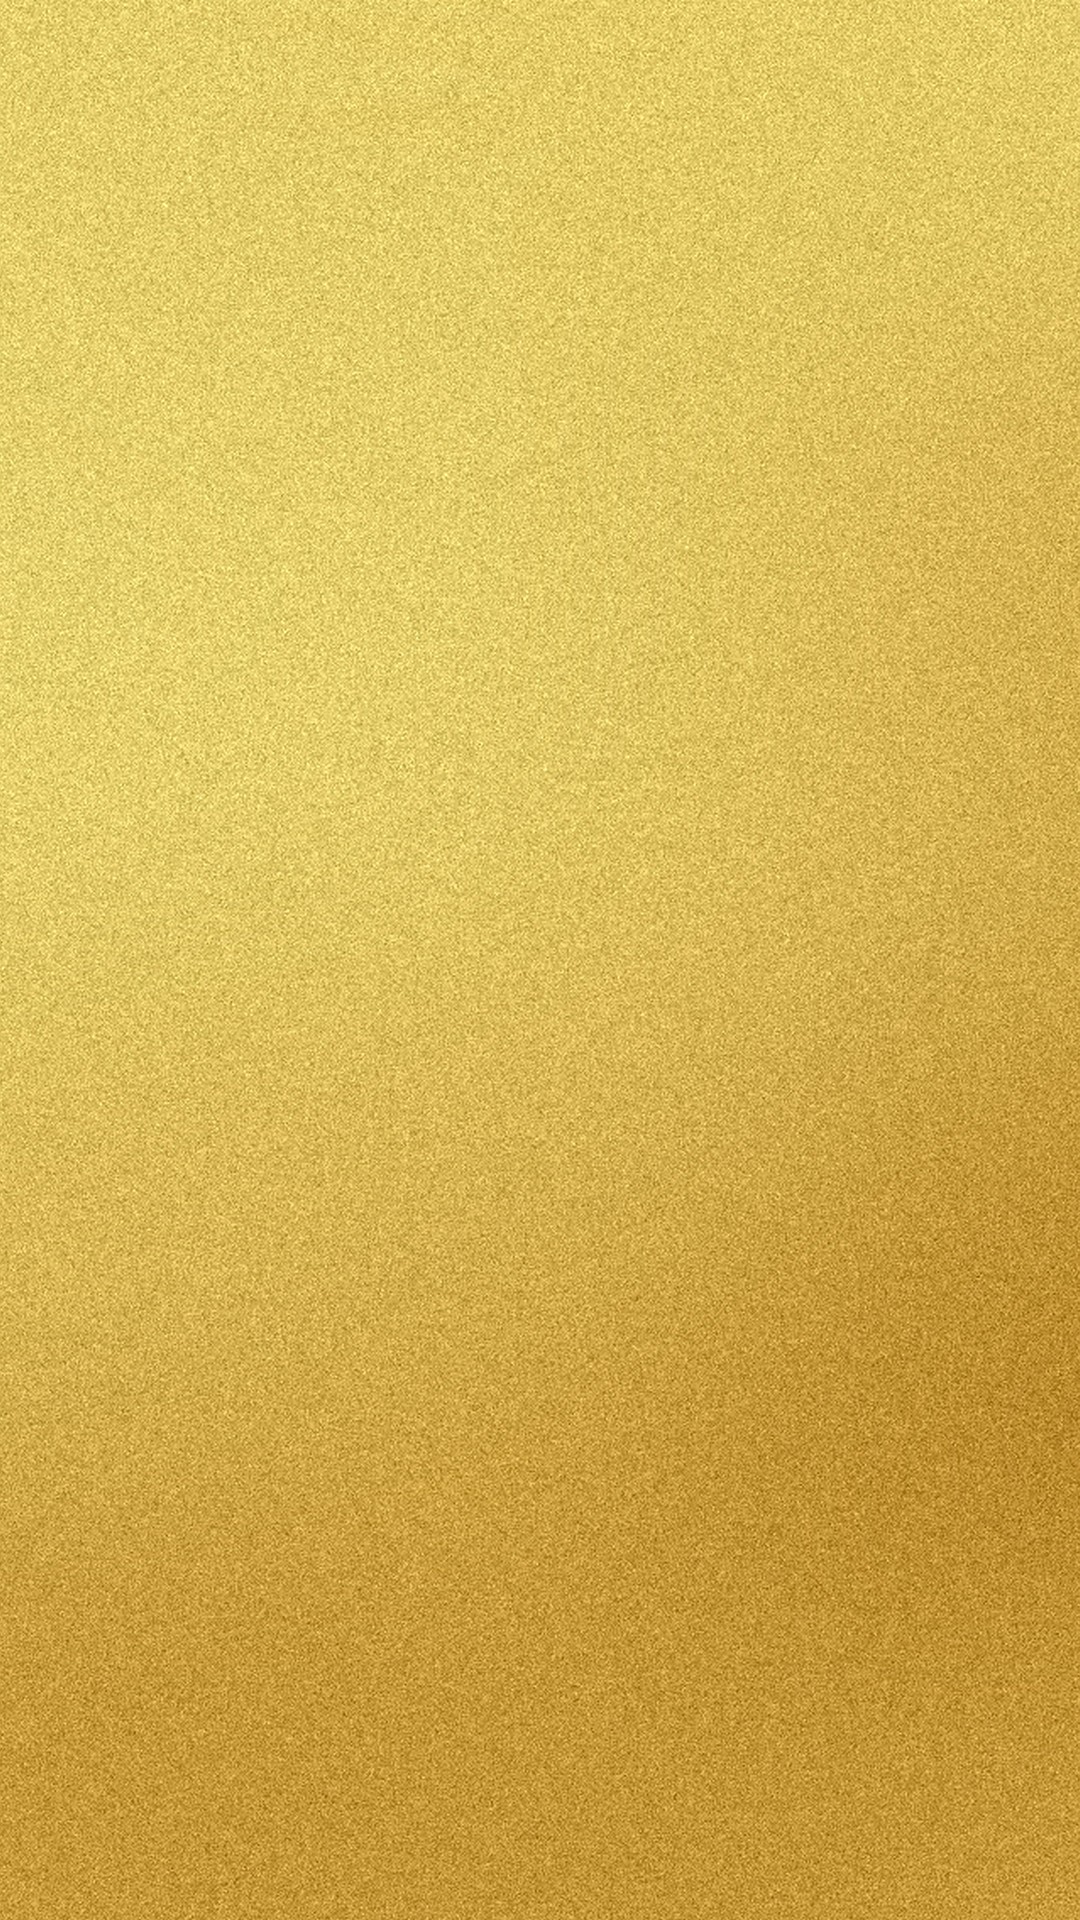 iphone 5sゴールド壁紙,黄,ベージュ